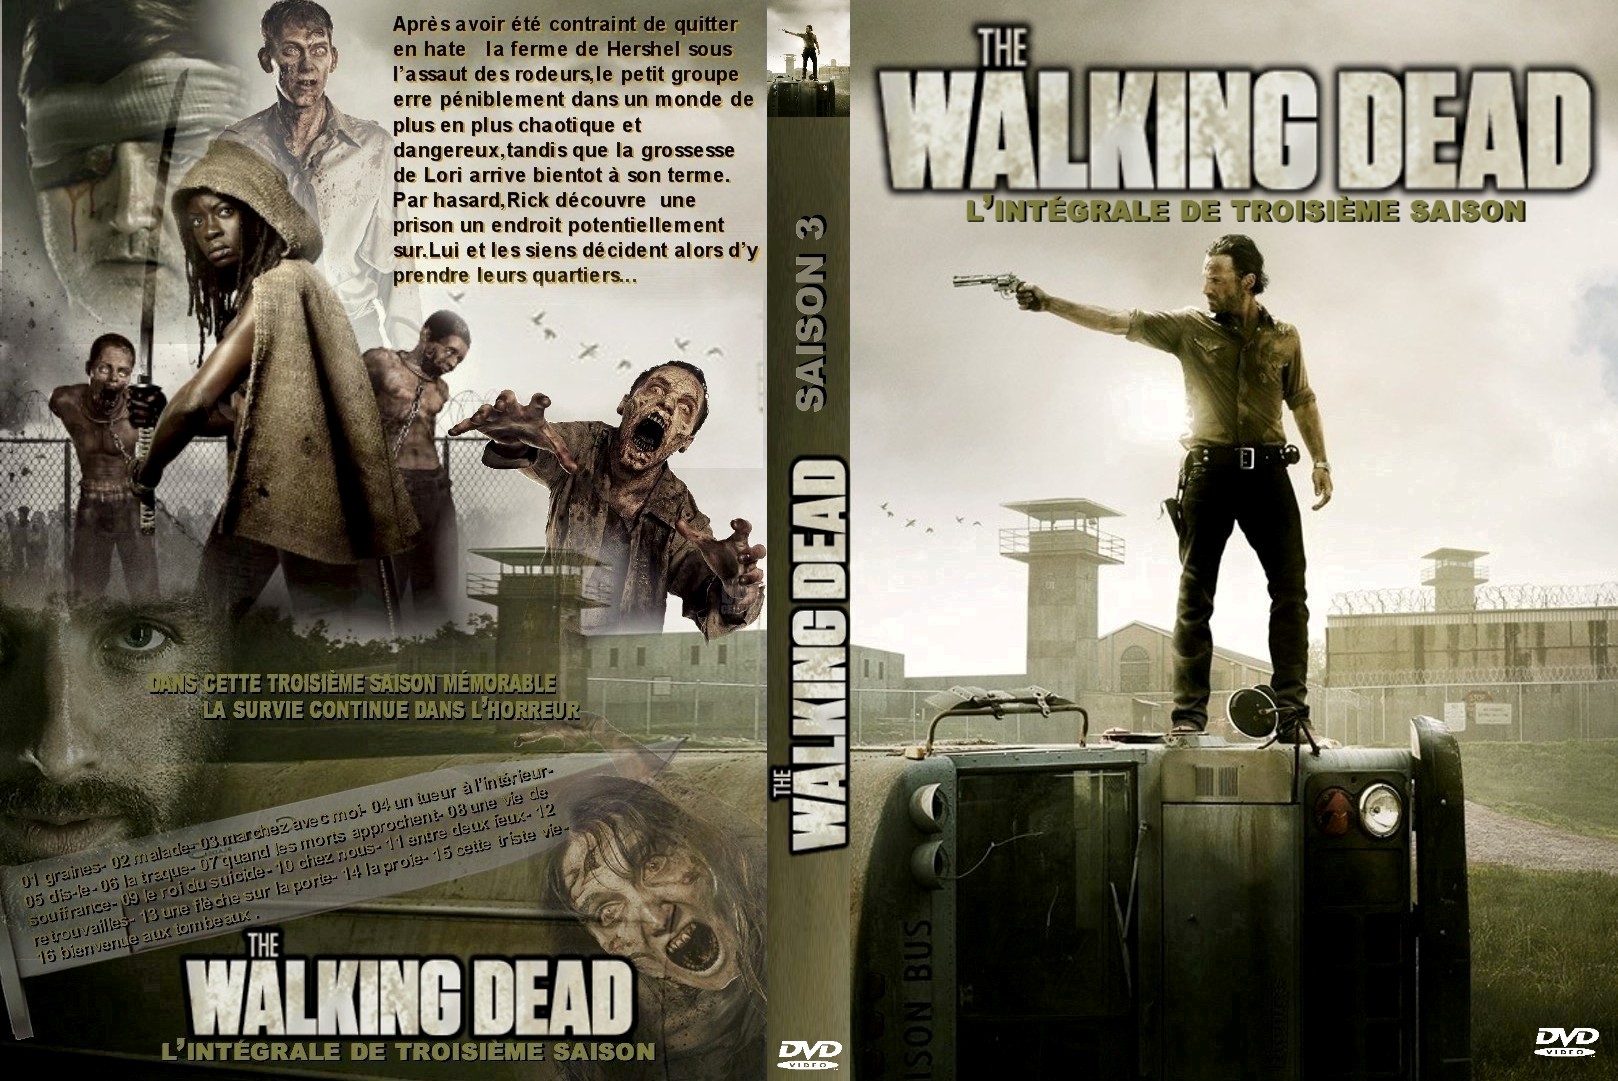 Jaquette DVD The Walking dead Saison 3 custom v2